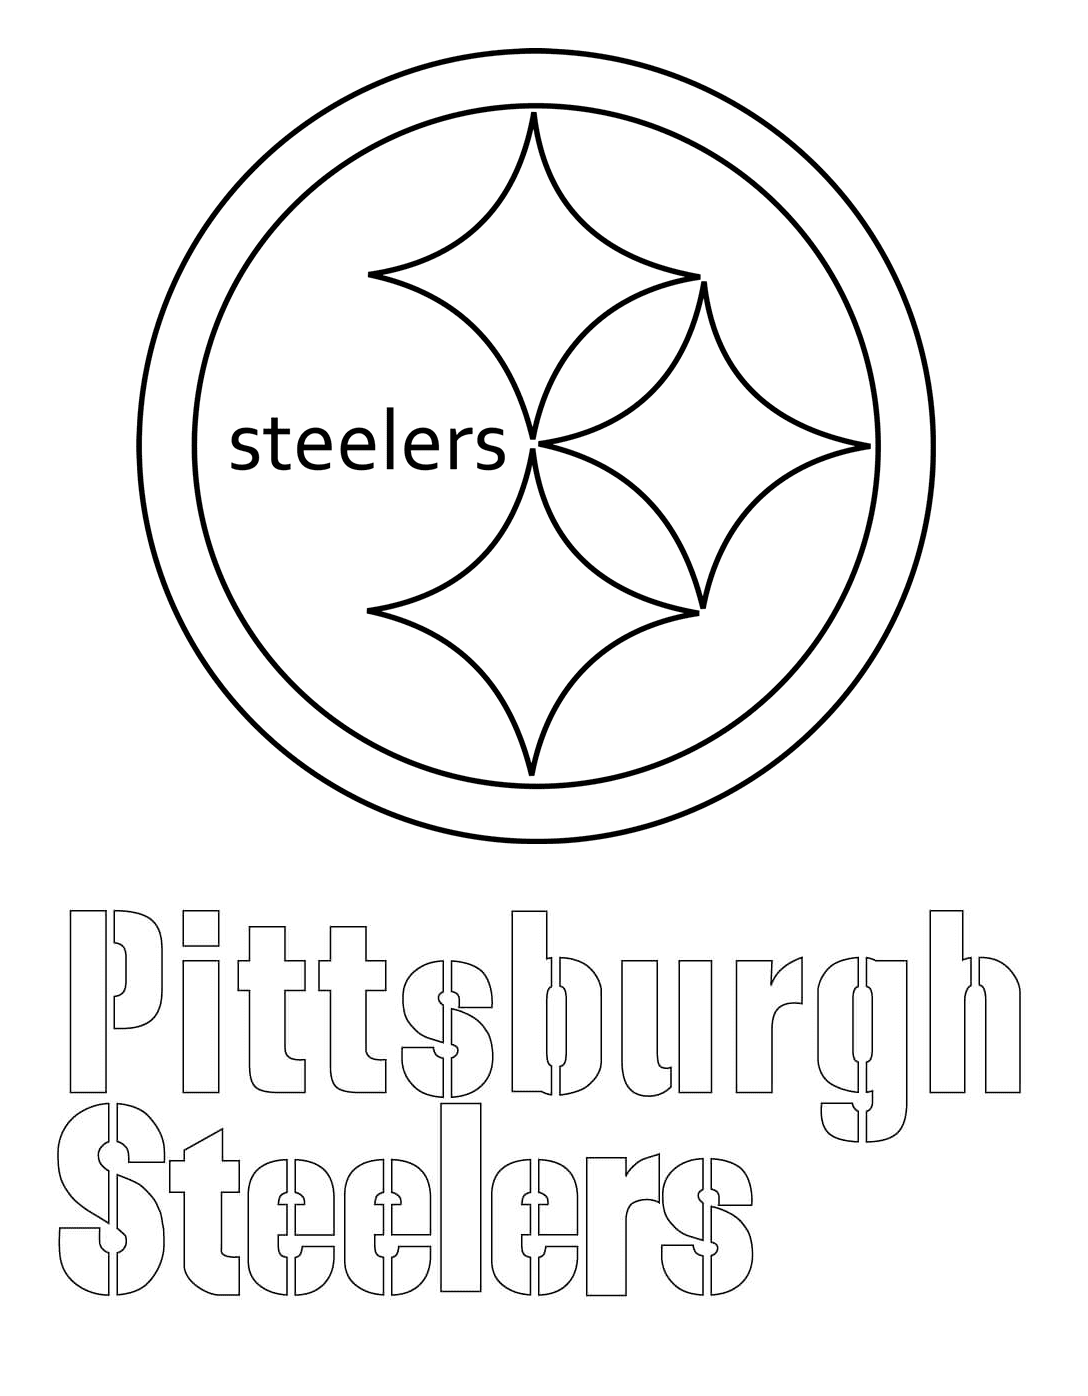 شعار بيتسبرغ ستيلرز من اتحاد كرة القدم الأميركي